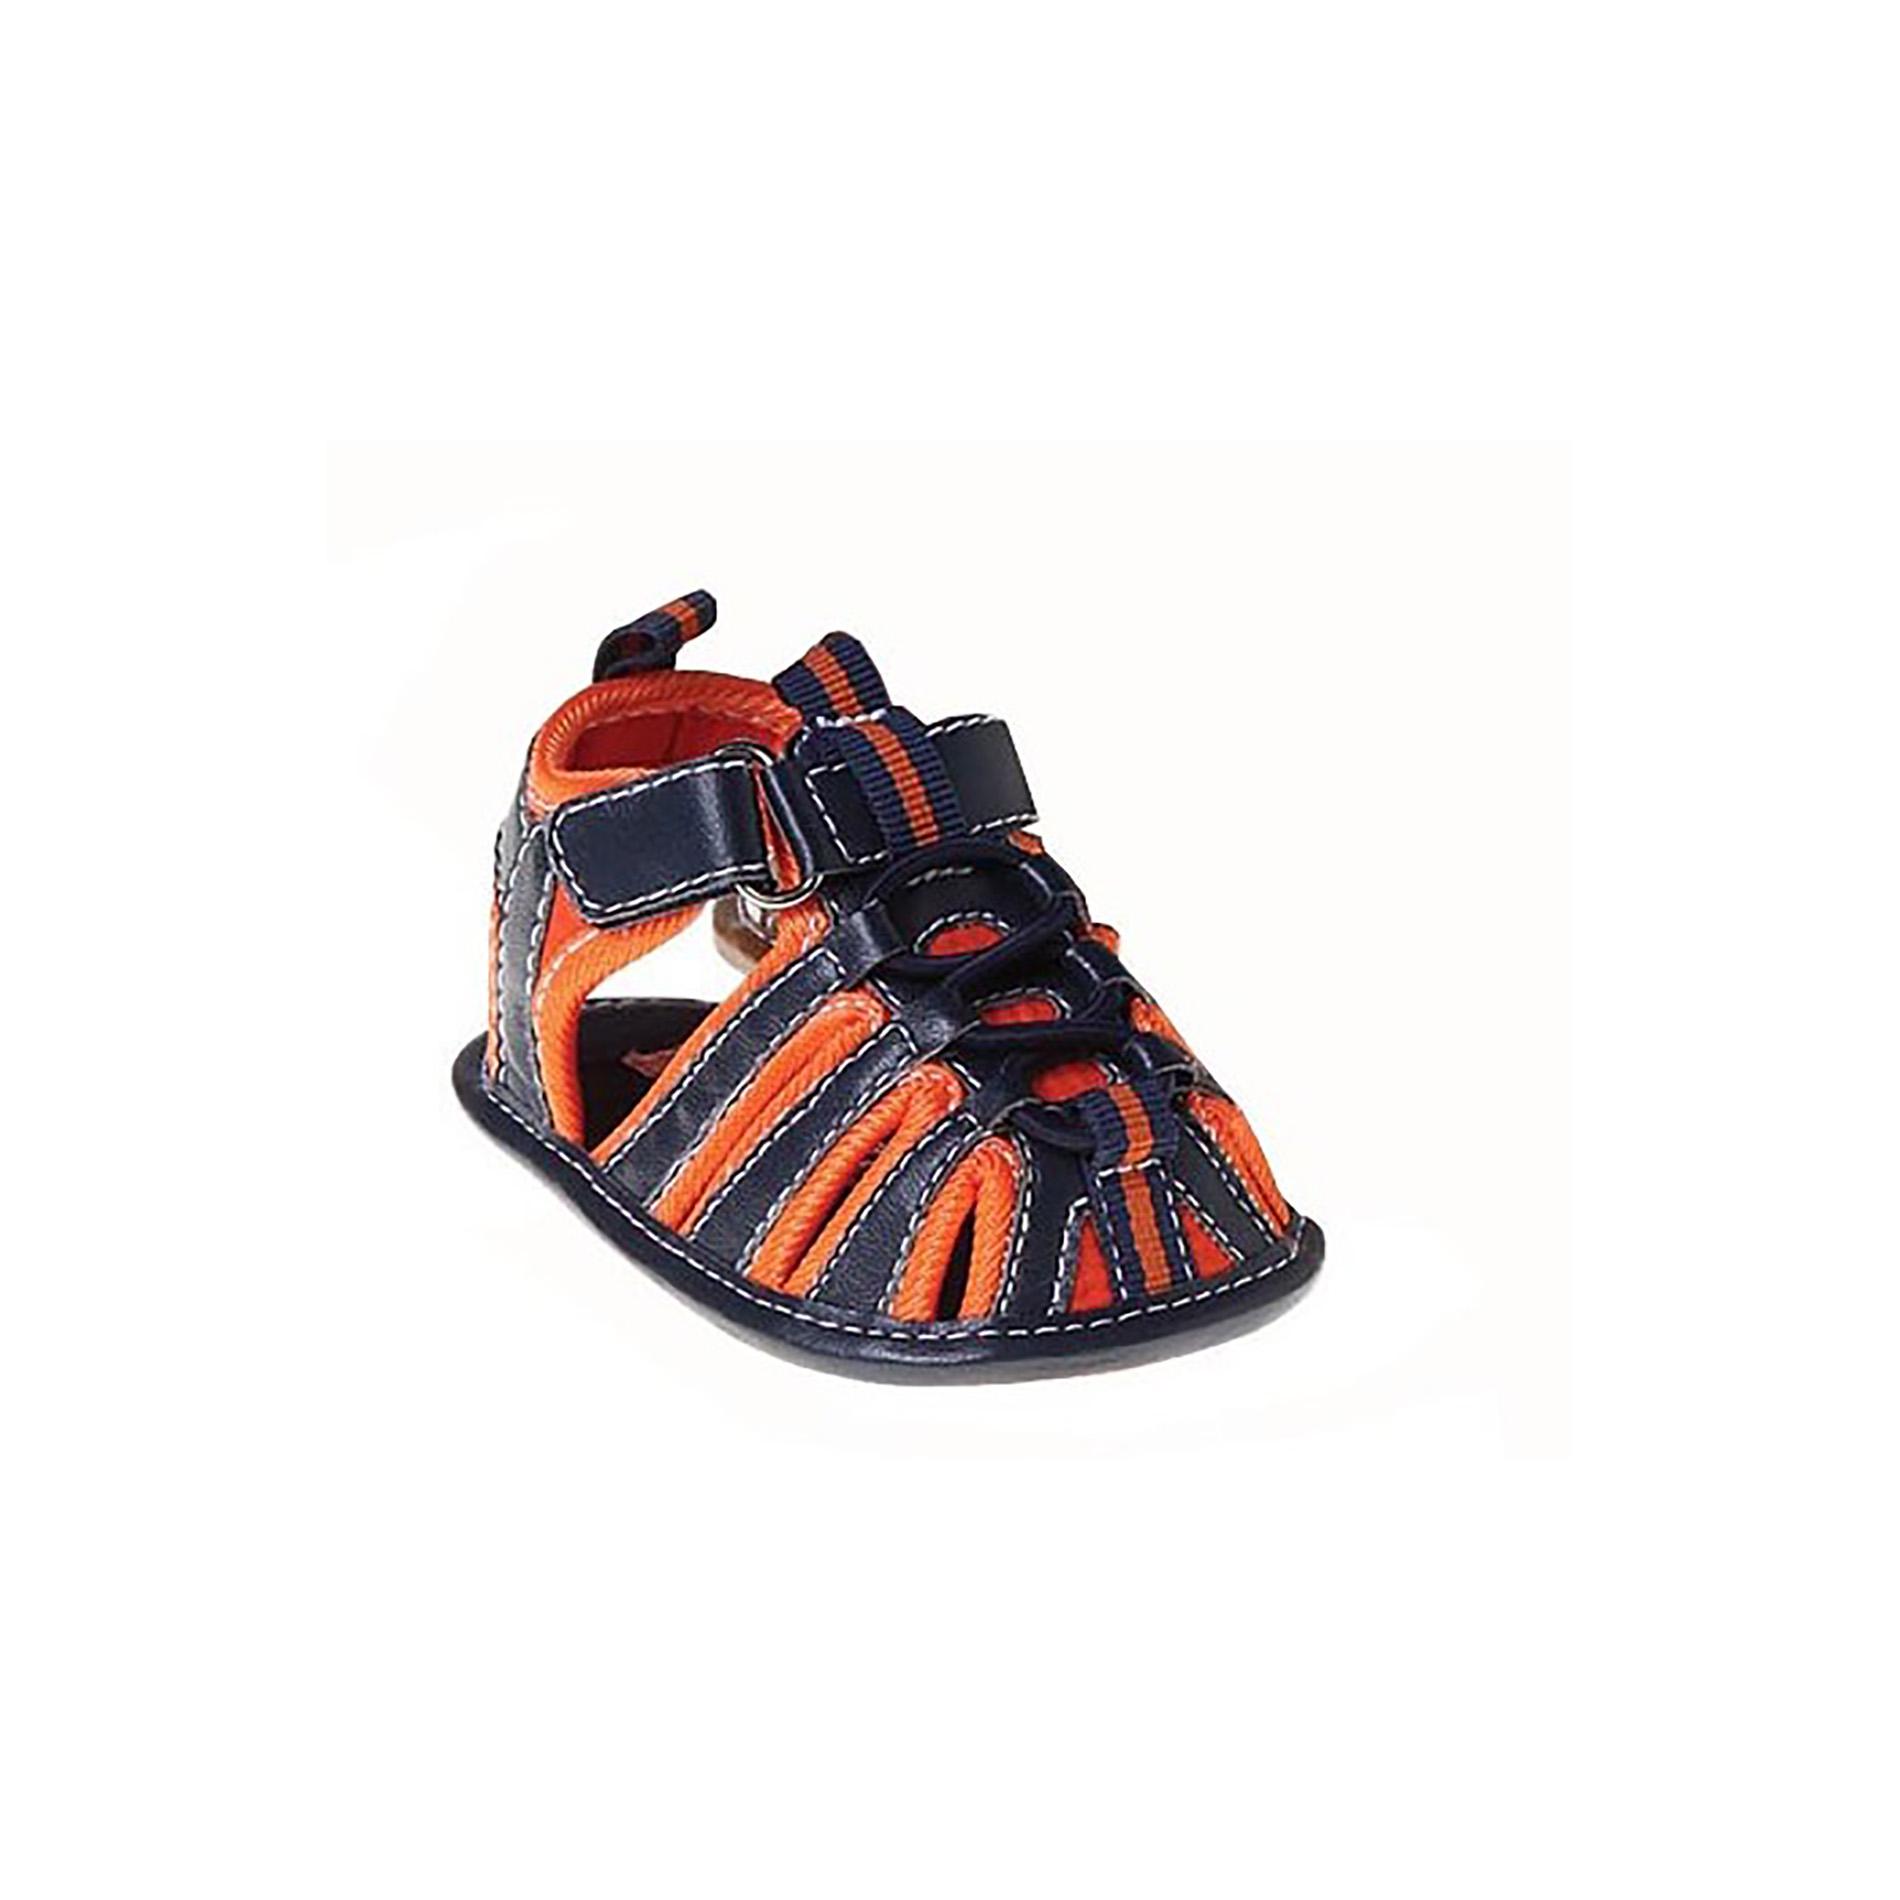 Joseph Allen Baby Boys' Sport Sandal - Navy Blue/Orange